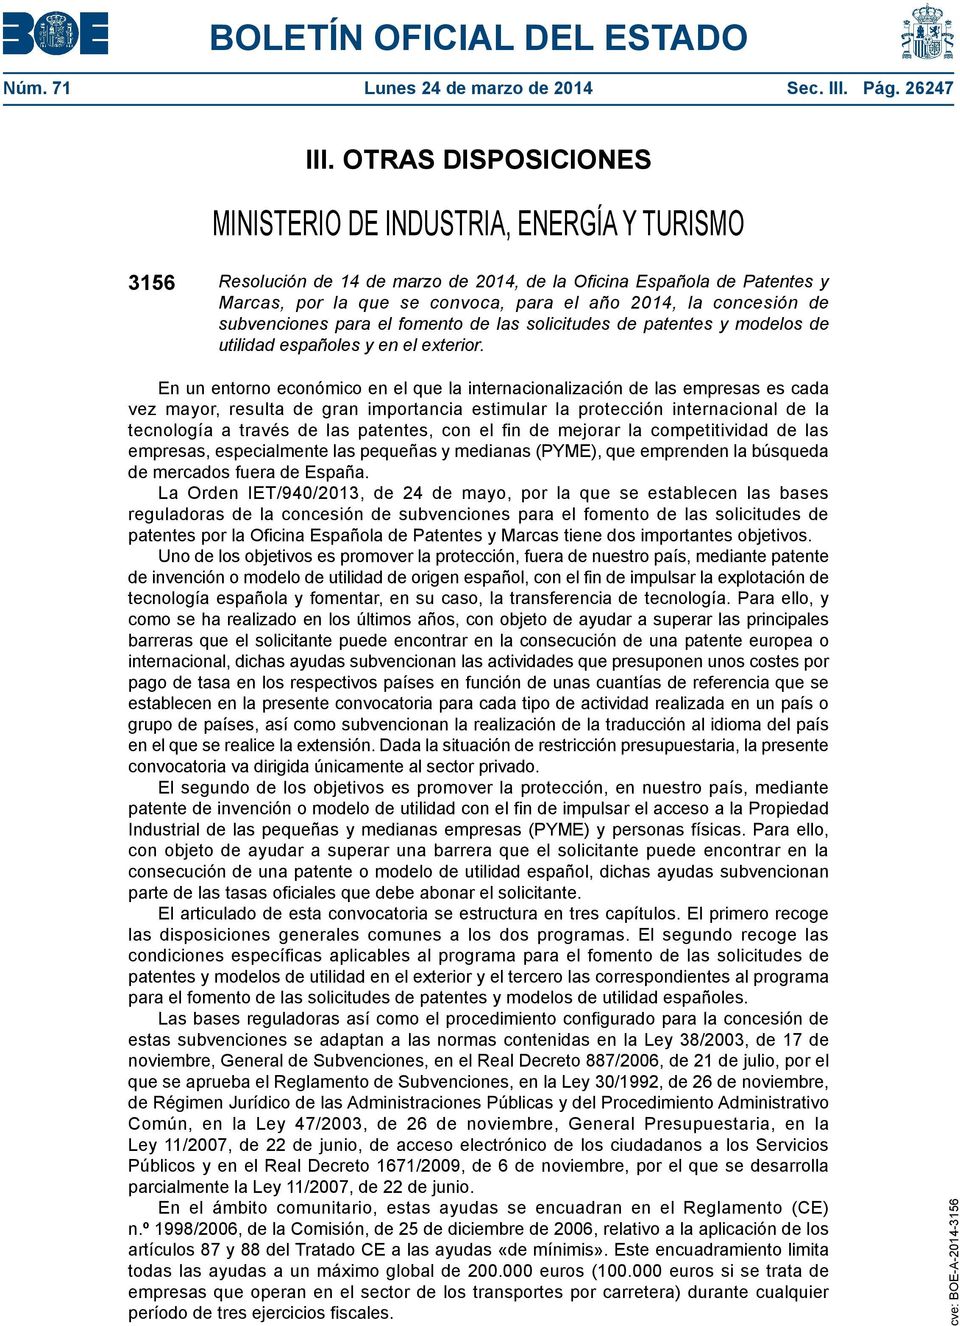 concesión de subvenciones para el fomento de las solicitudes de patentes y modelos de utilidad españoles y en el exterior.